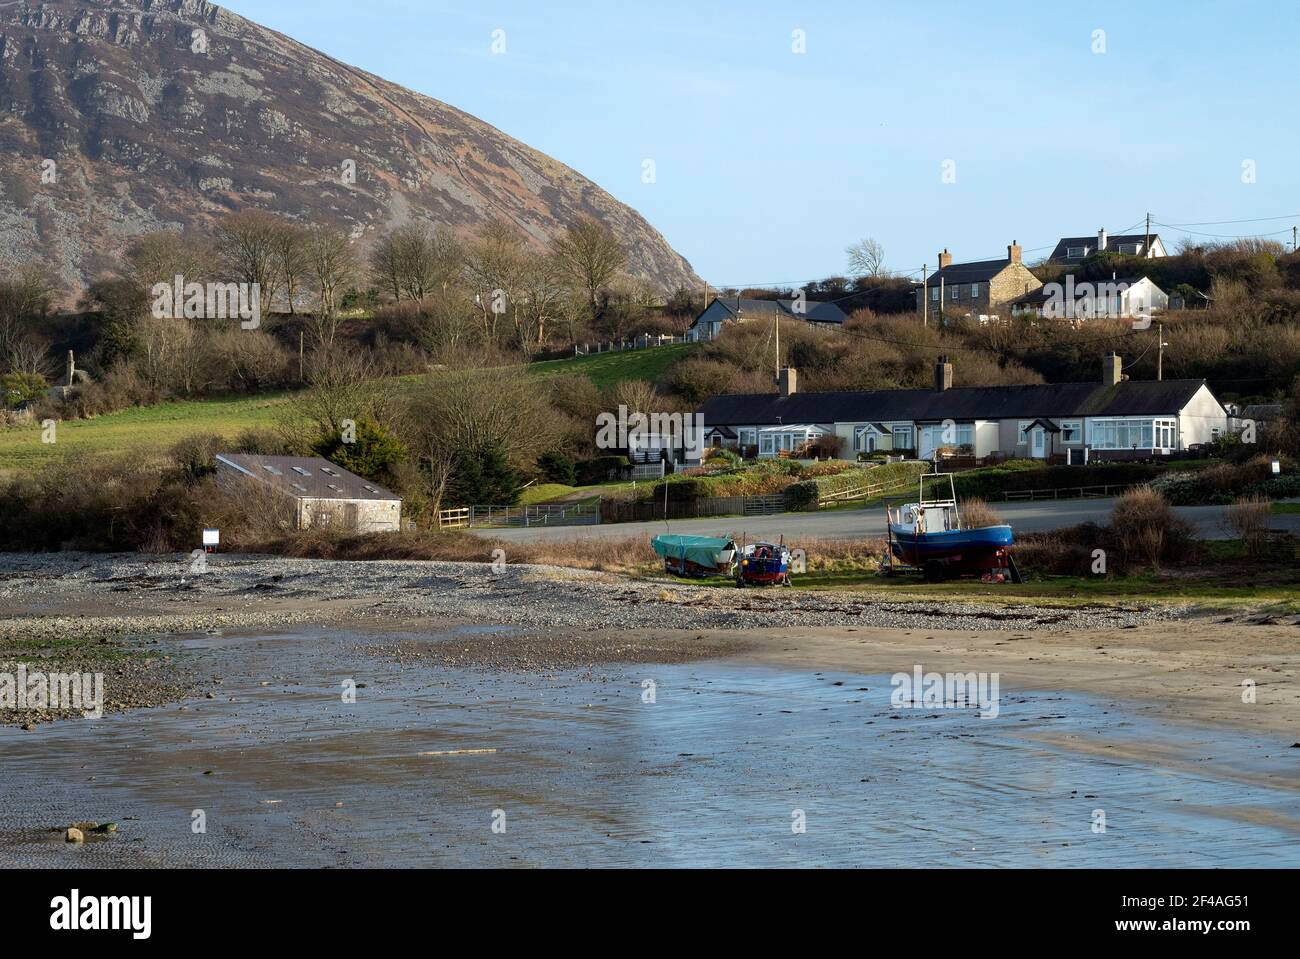 Plage de Trefor, pays de Galles. Paysage charmant avec de petites maisons sur une rive de sable. Une baie isolée près de la magnifique péninsule de Llyn. Jour ensoleillé Banque D'Images